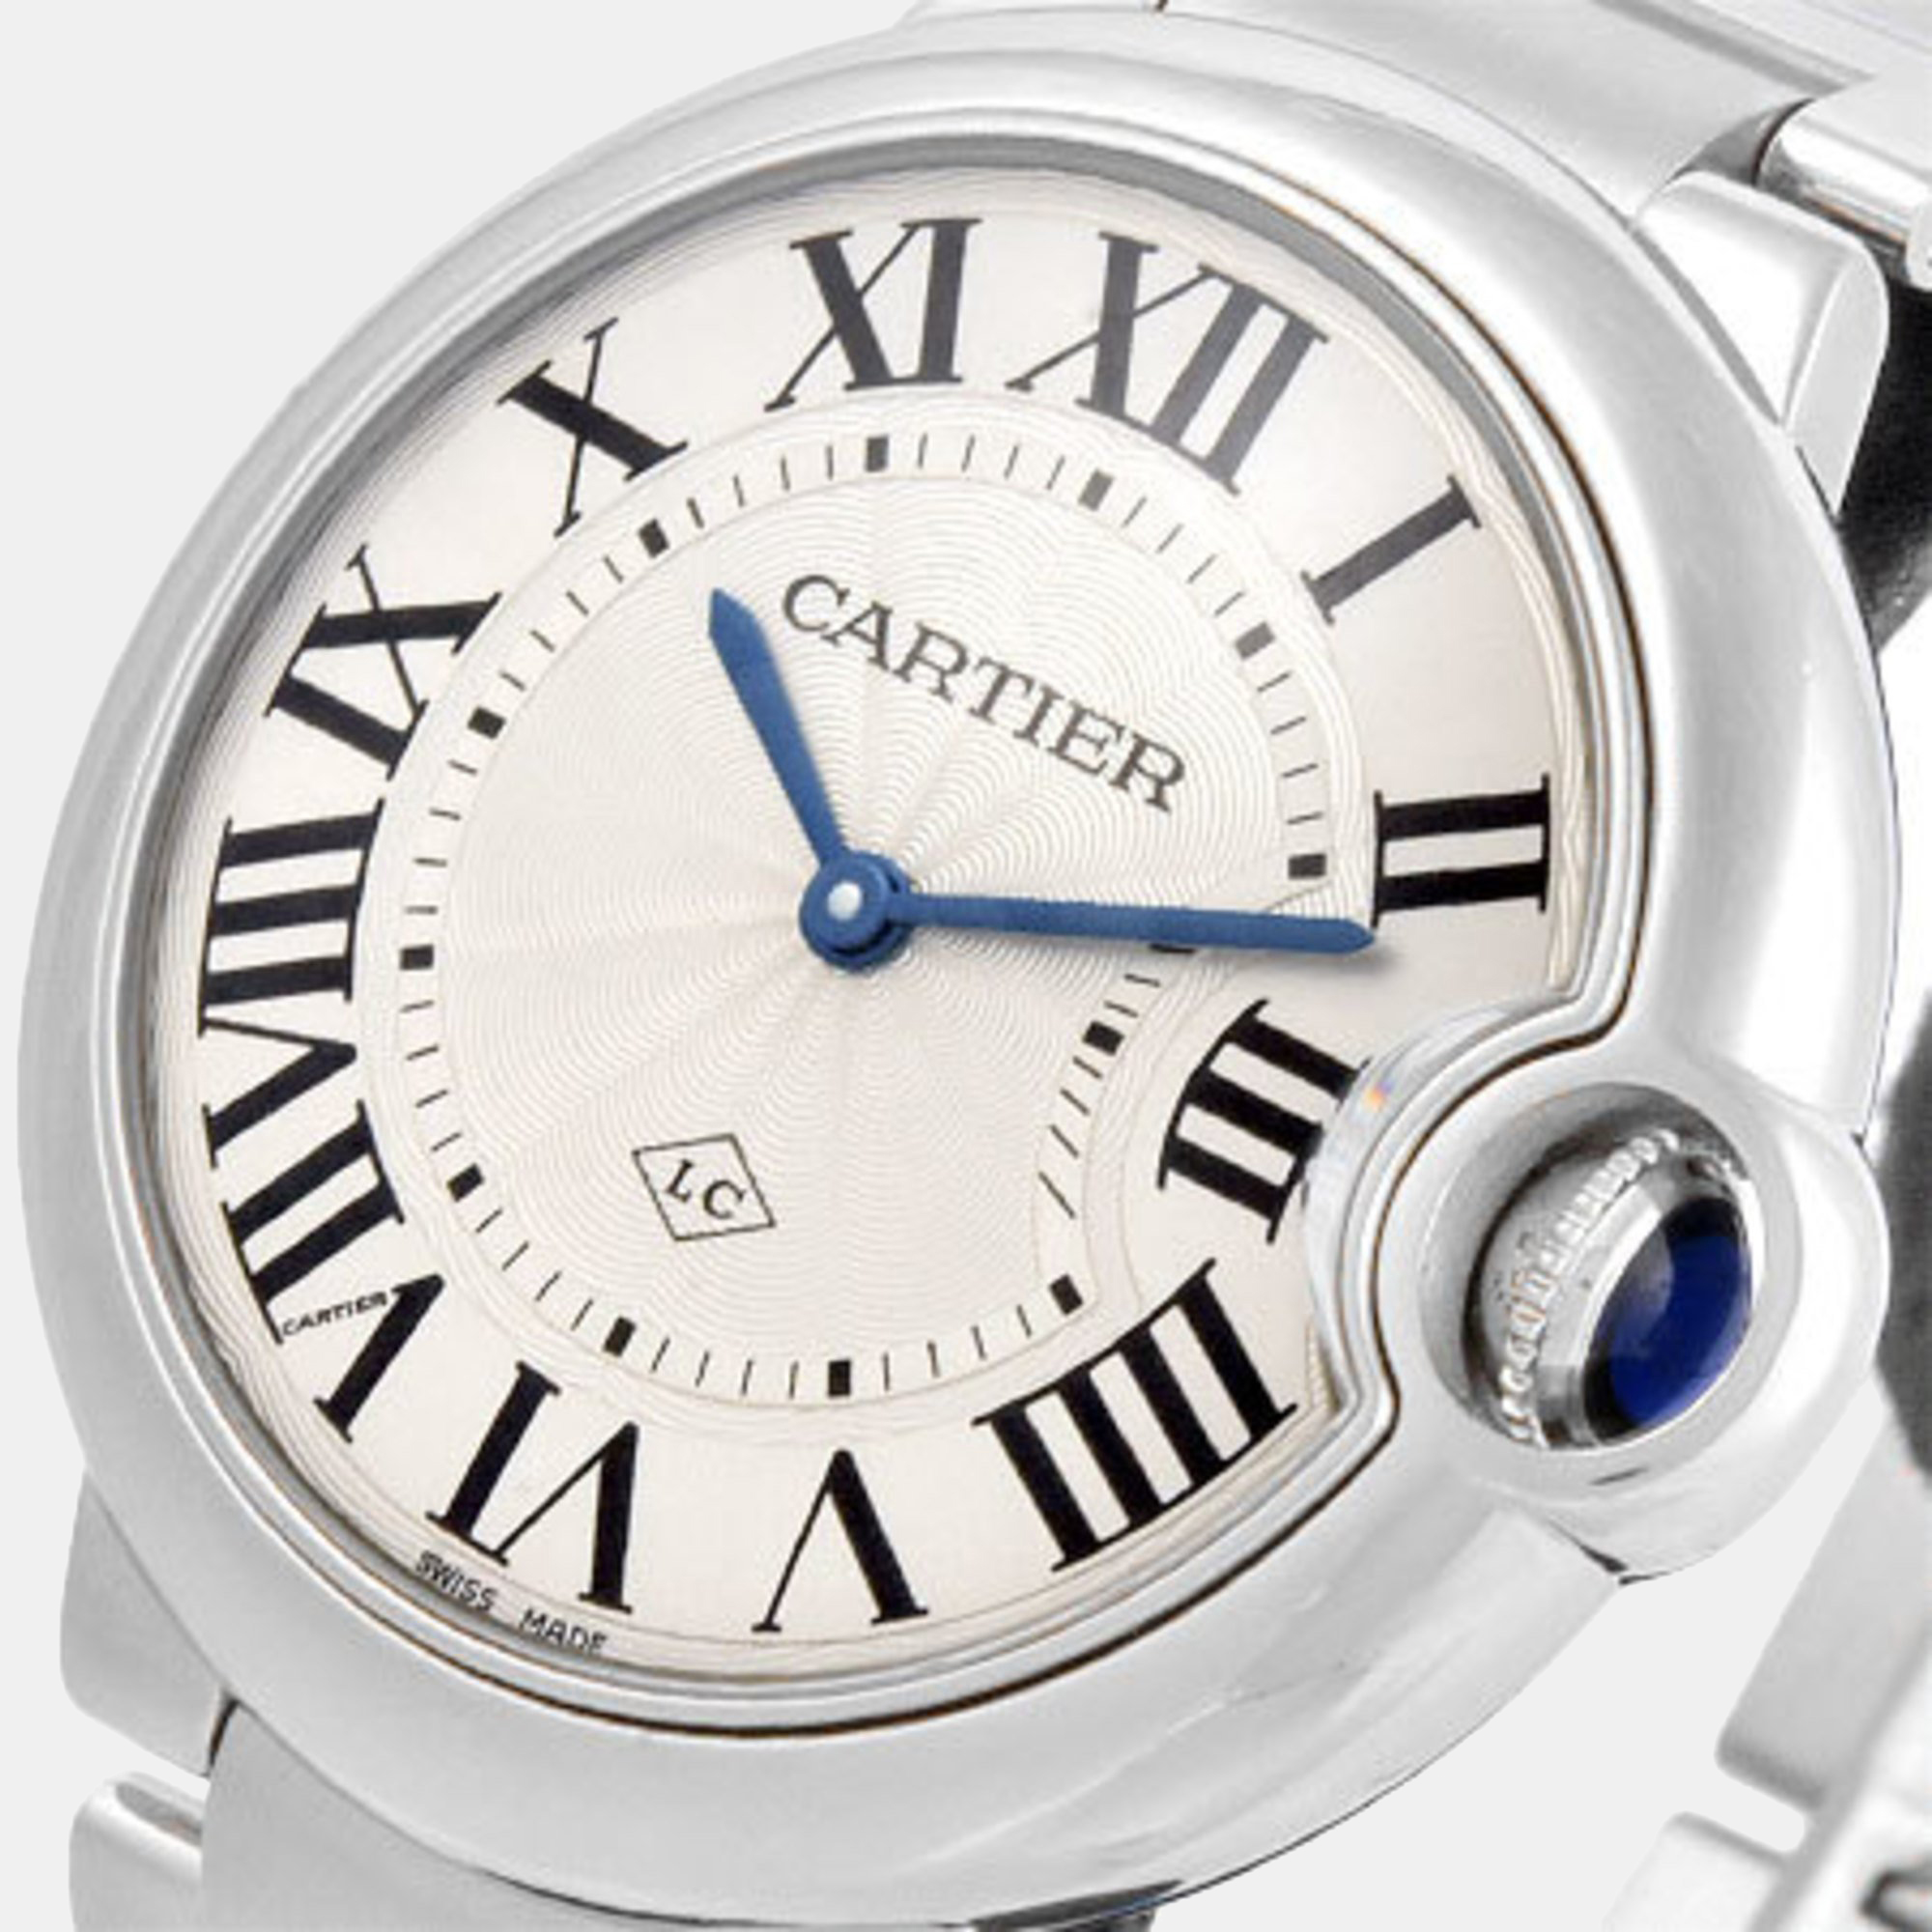 

Cartier Silver Stainless Steel Ballon Bleu W69011Z4 Quartz Men's Wristwatch 36 mm